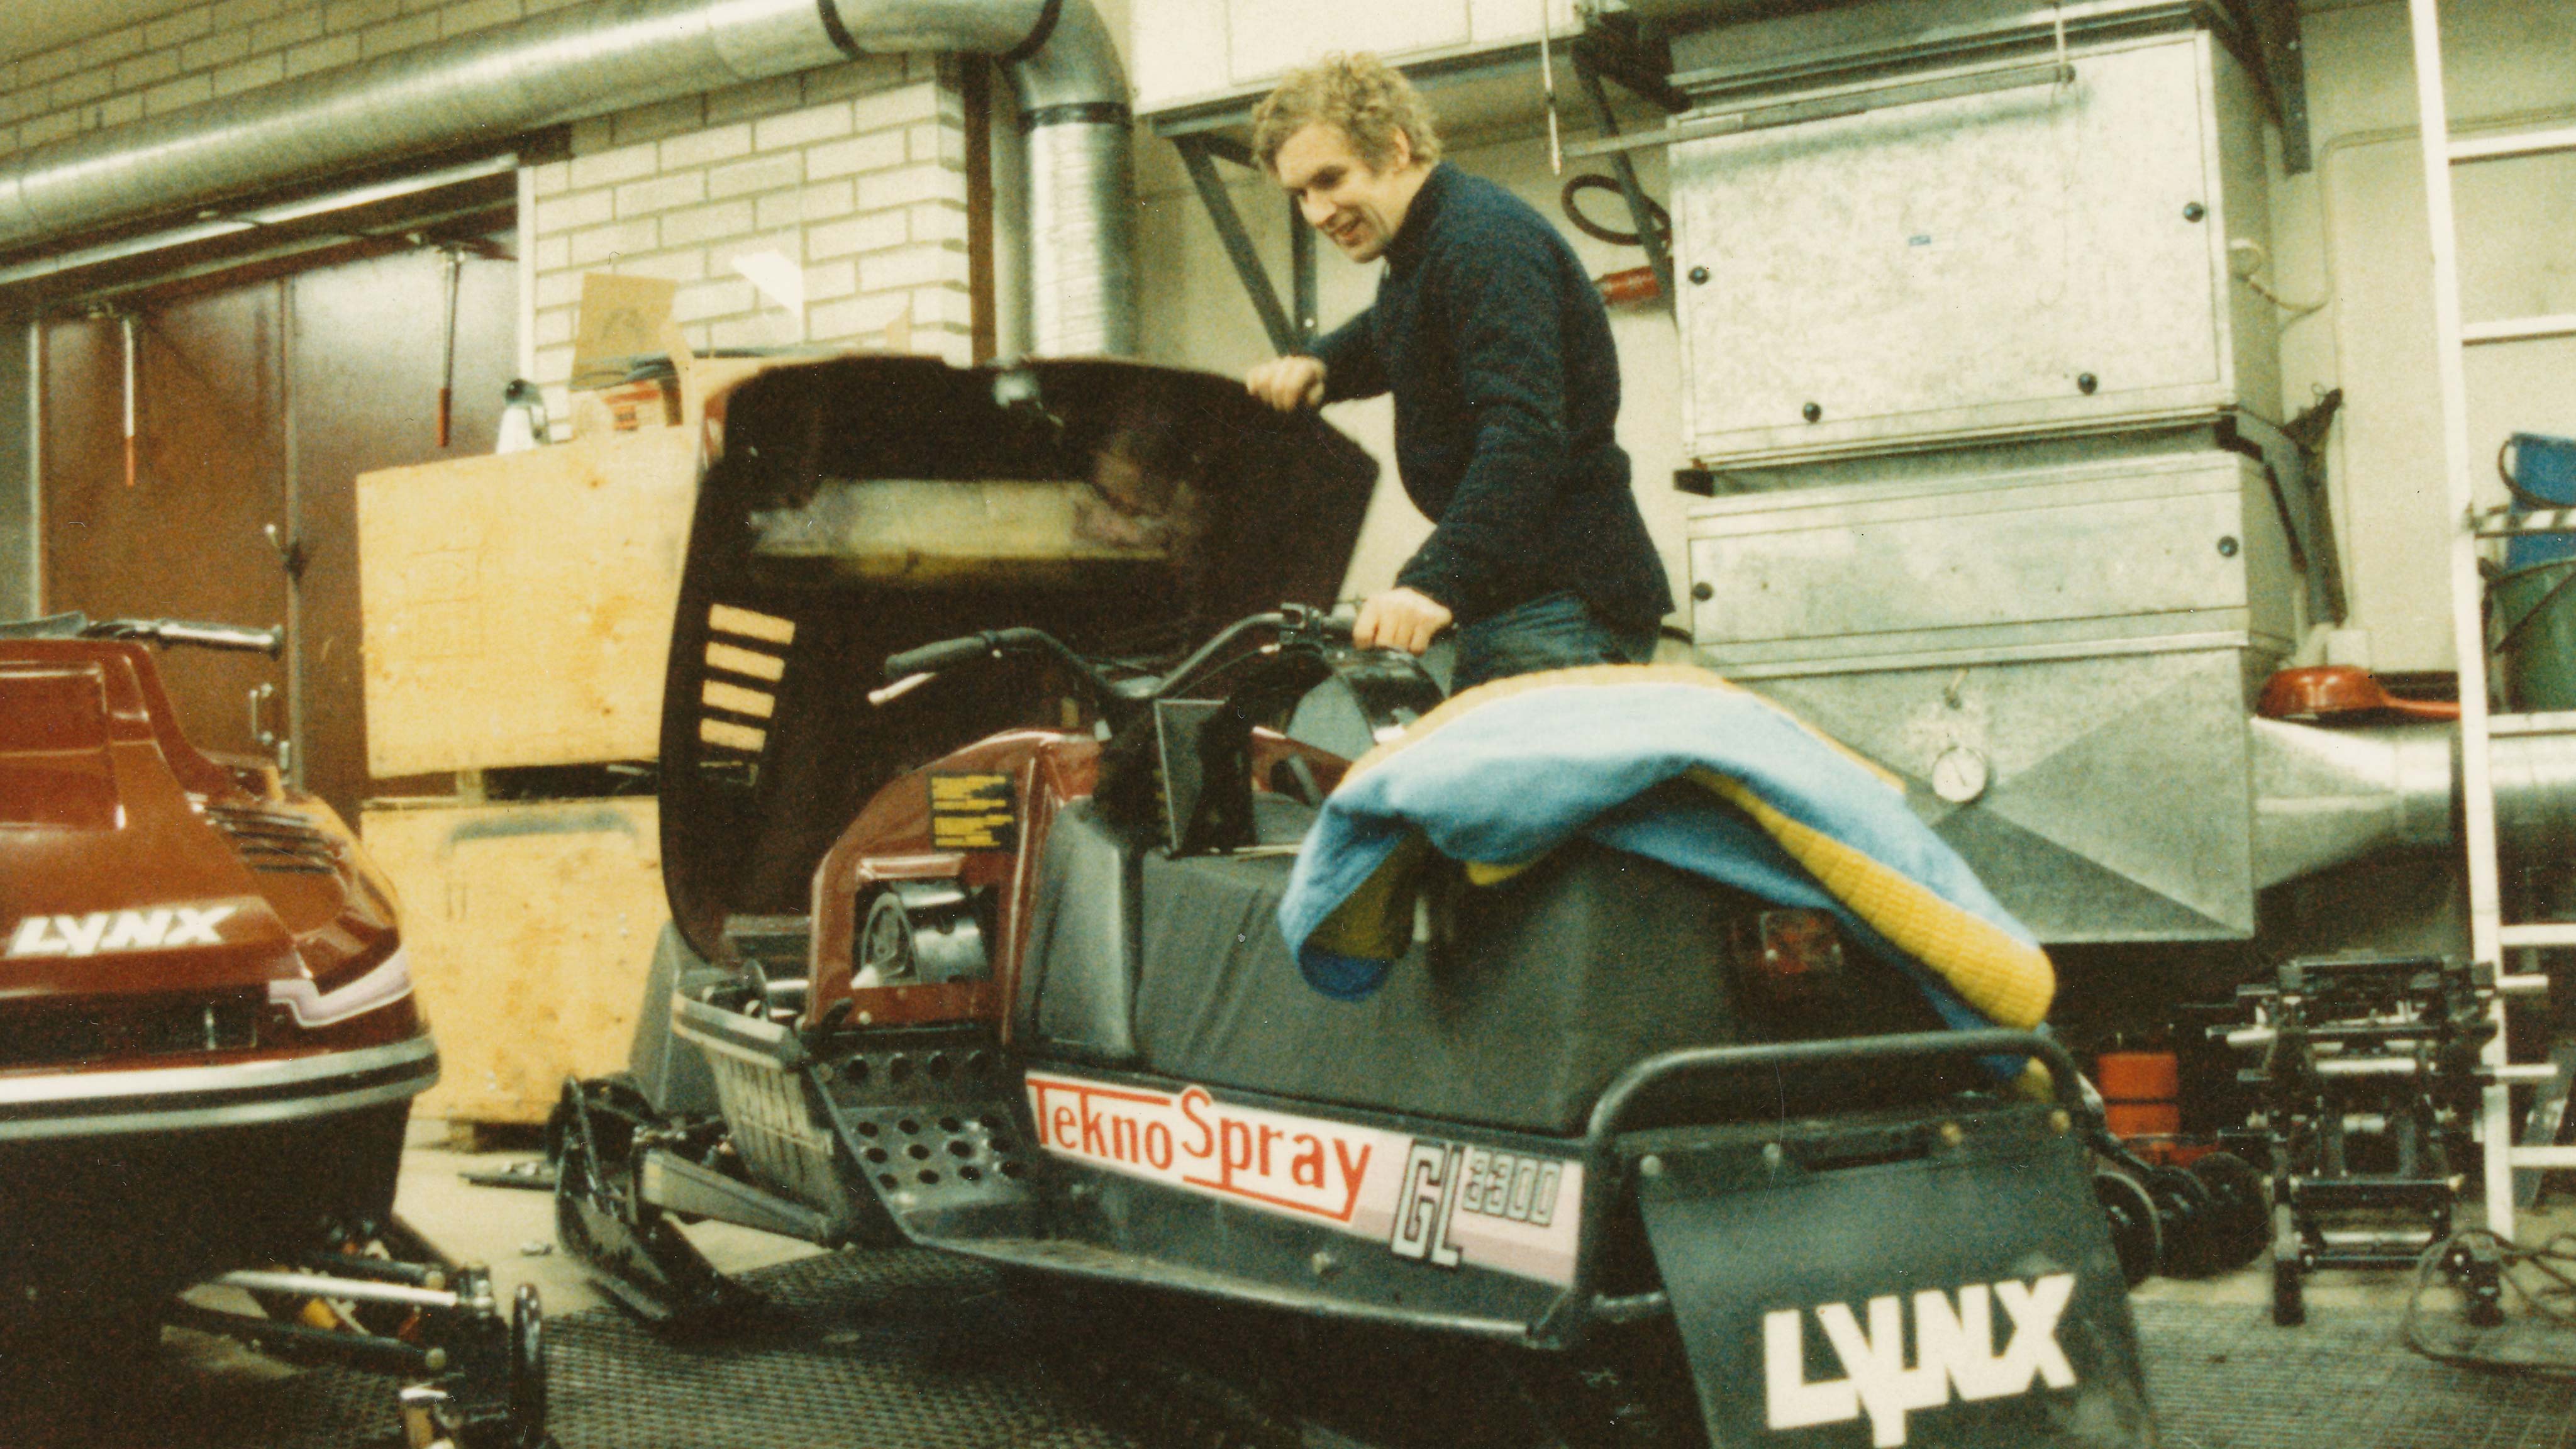 Mann som åpner panseret på gammel Lynx racing snøscooter i verksted